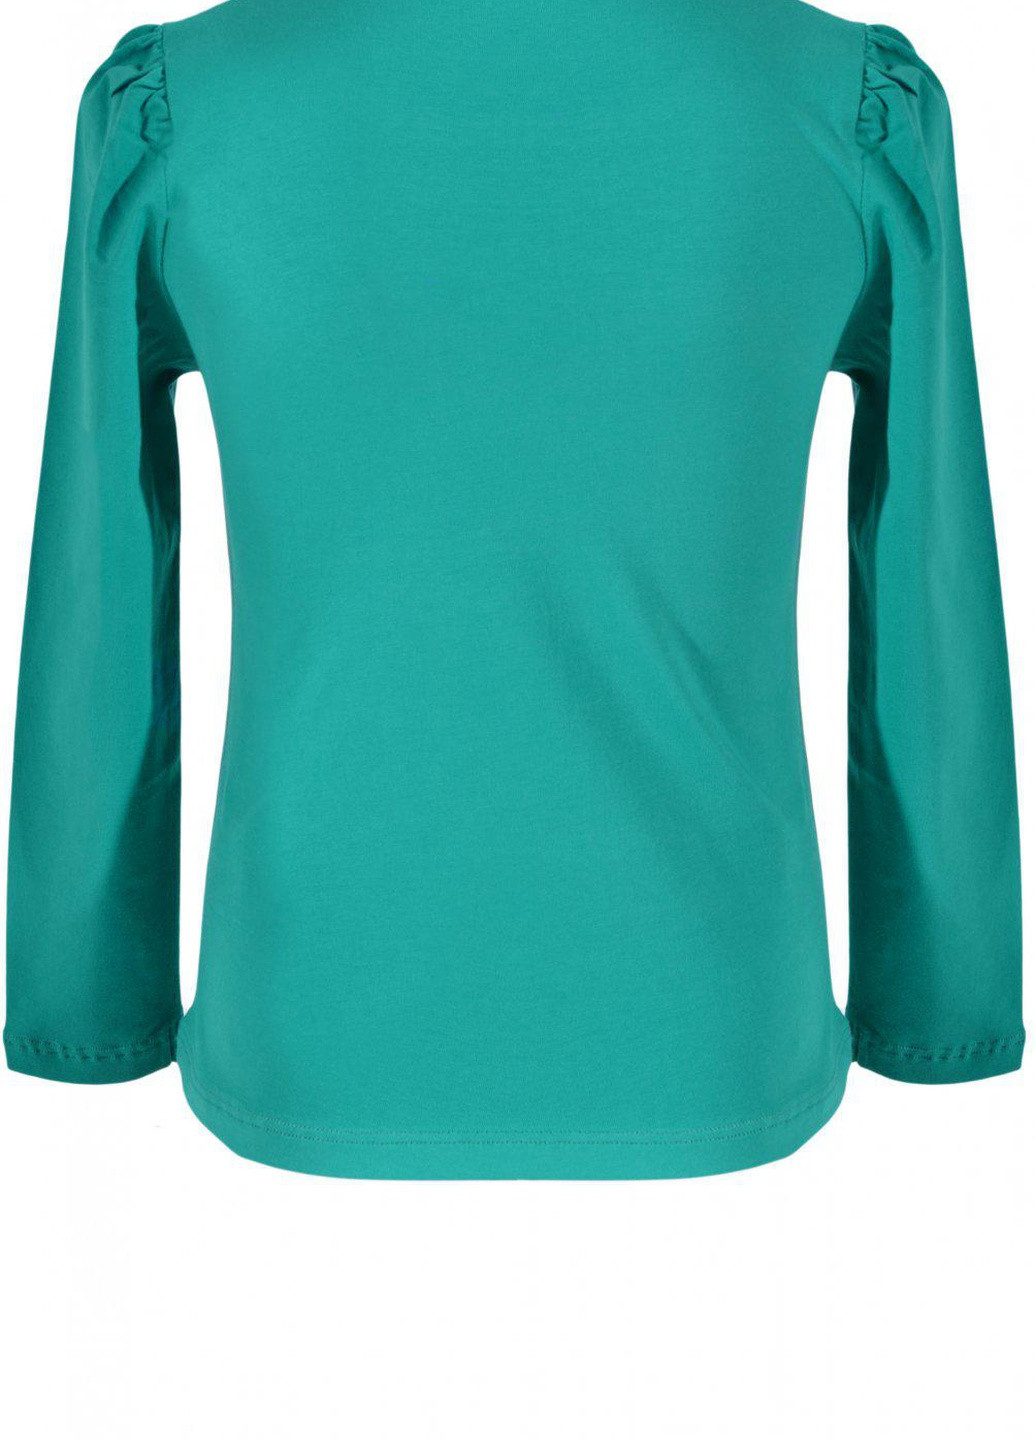 Синяя футболки батник дівчинка (w019-28) Lemanta